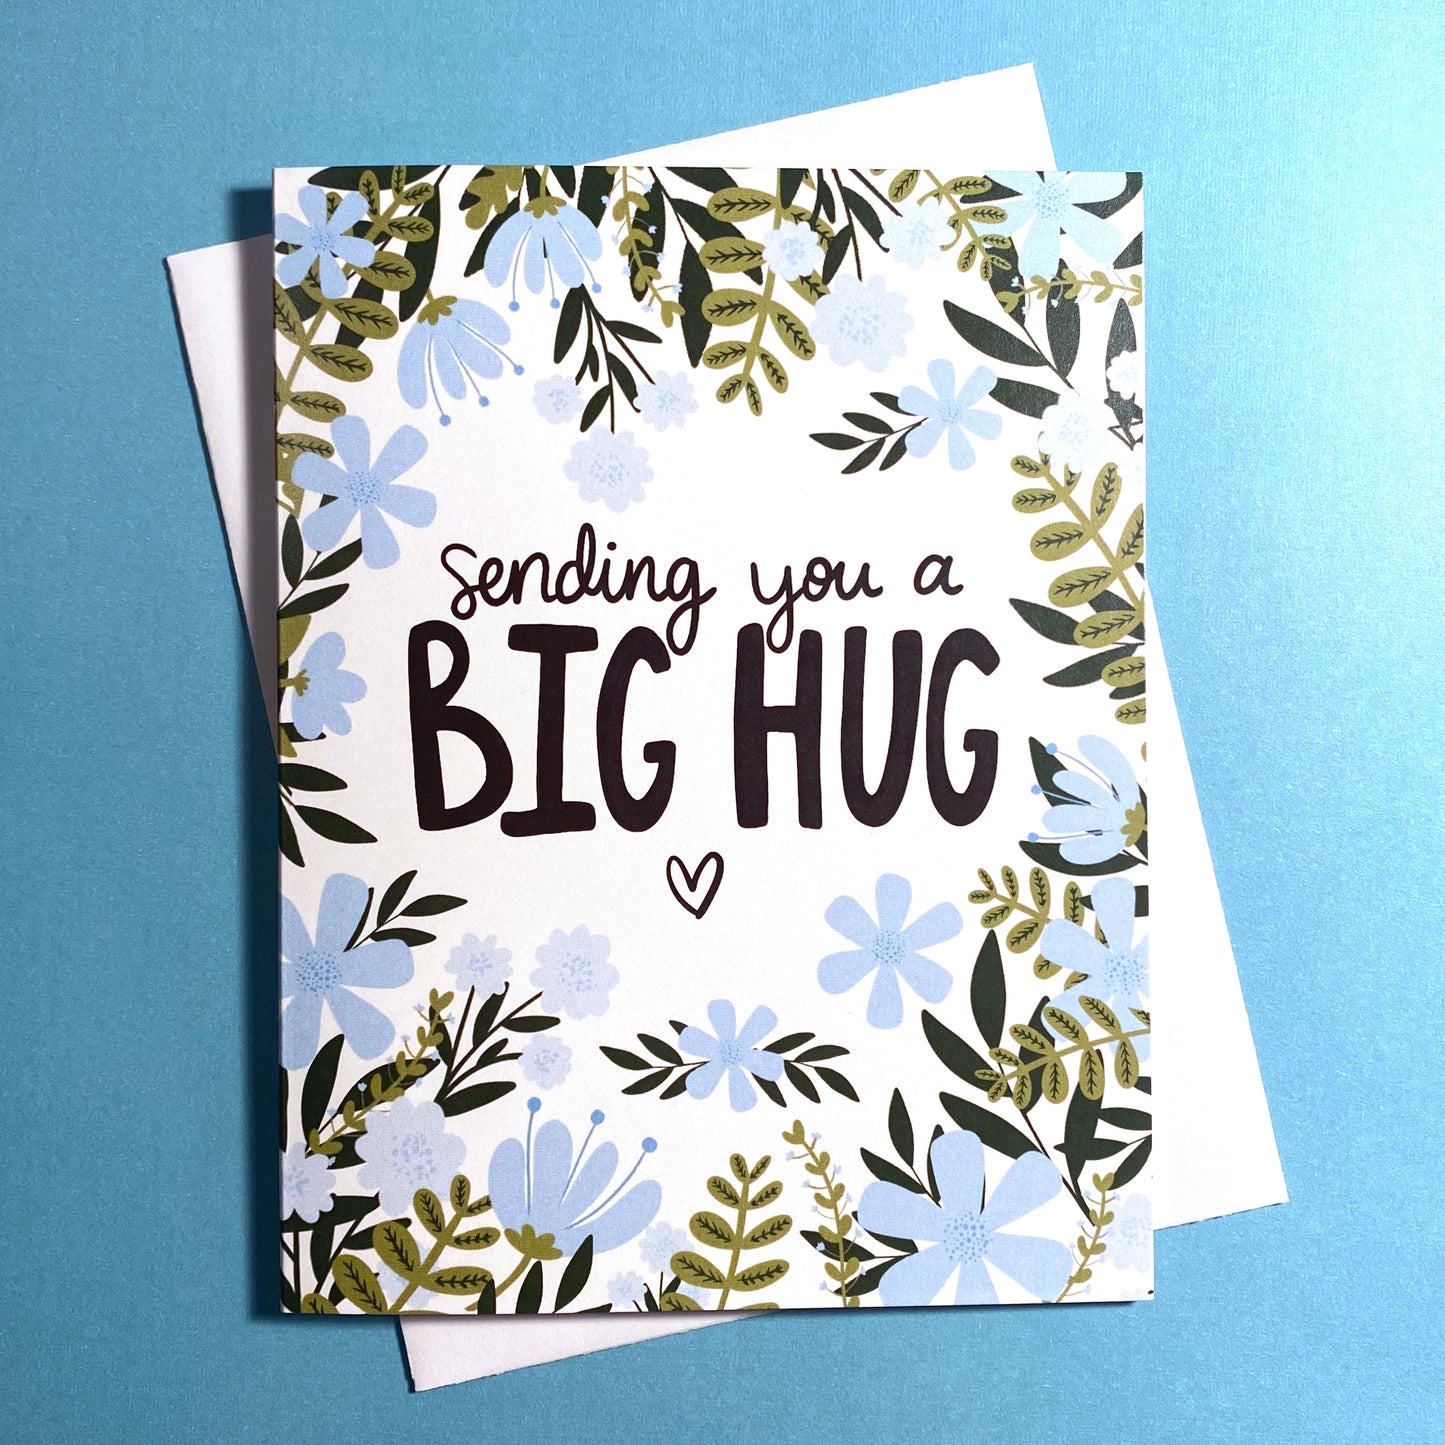 Sending Big Hugs Card